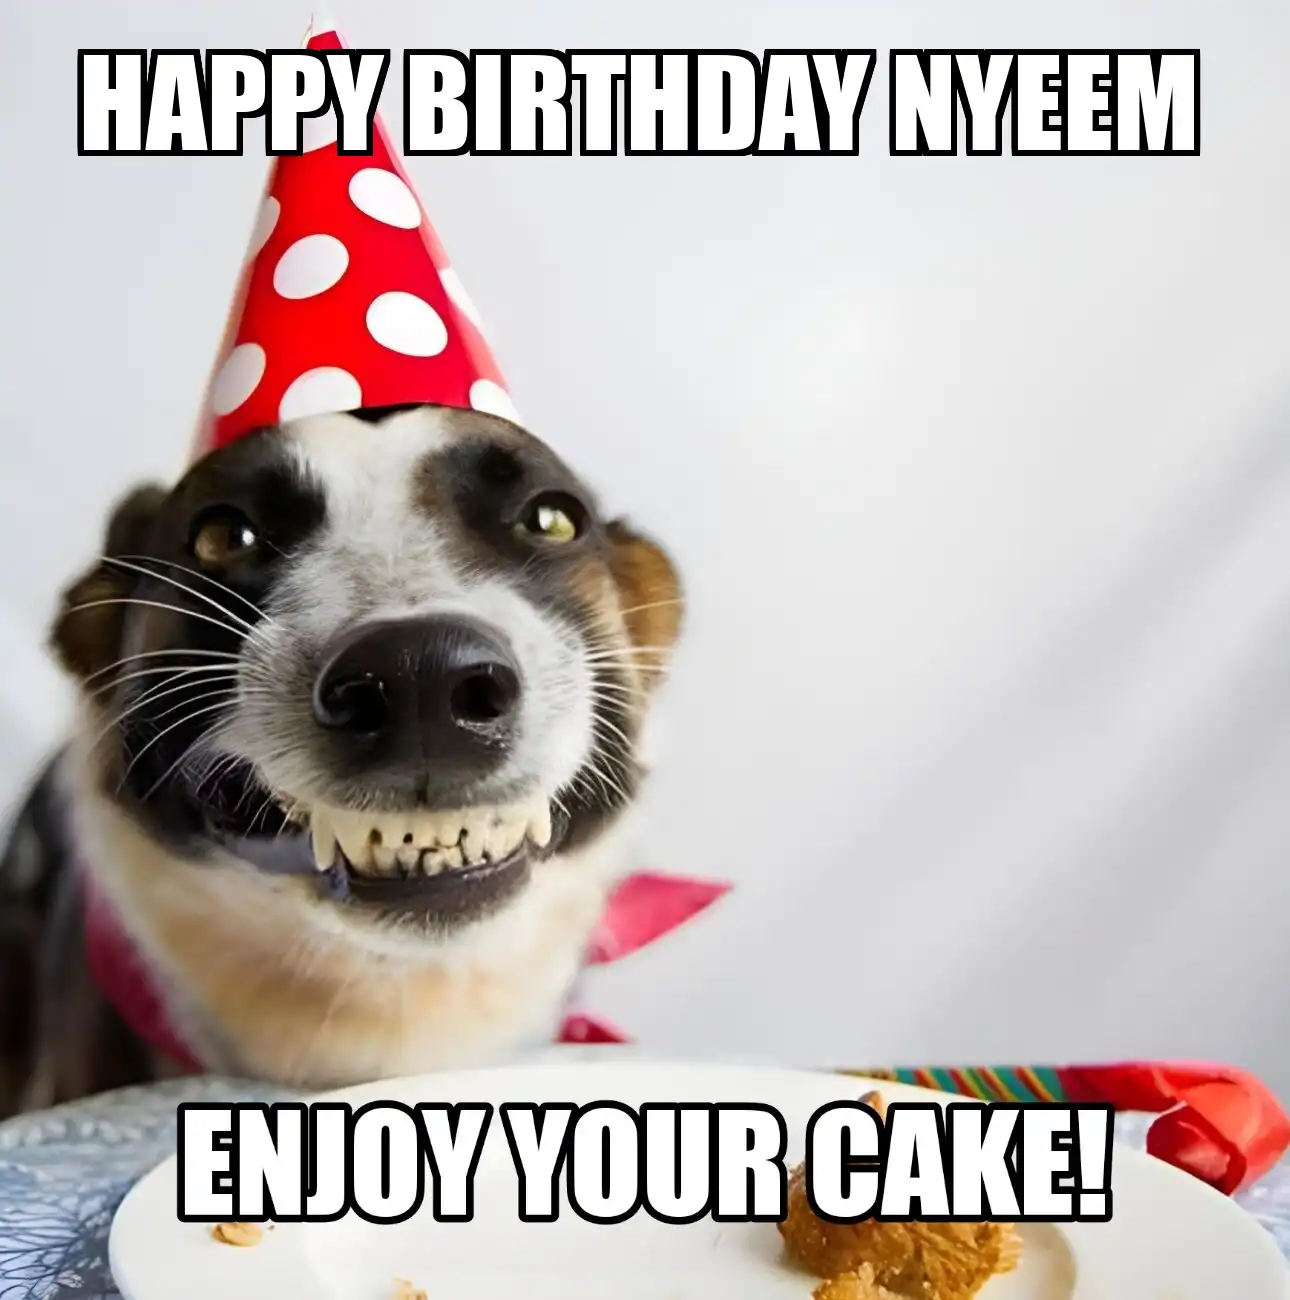 Happy Birthday Nyeem Enjoy Your Cake Dog Meme